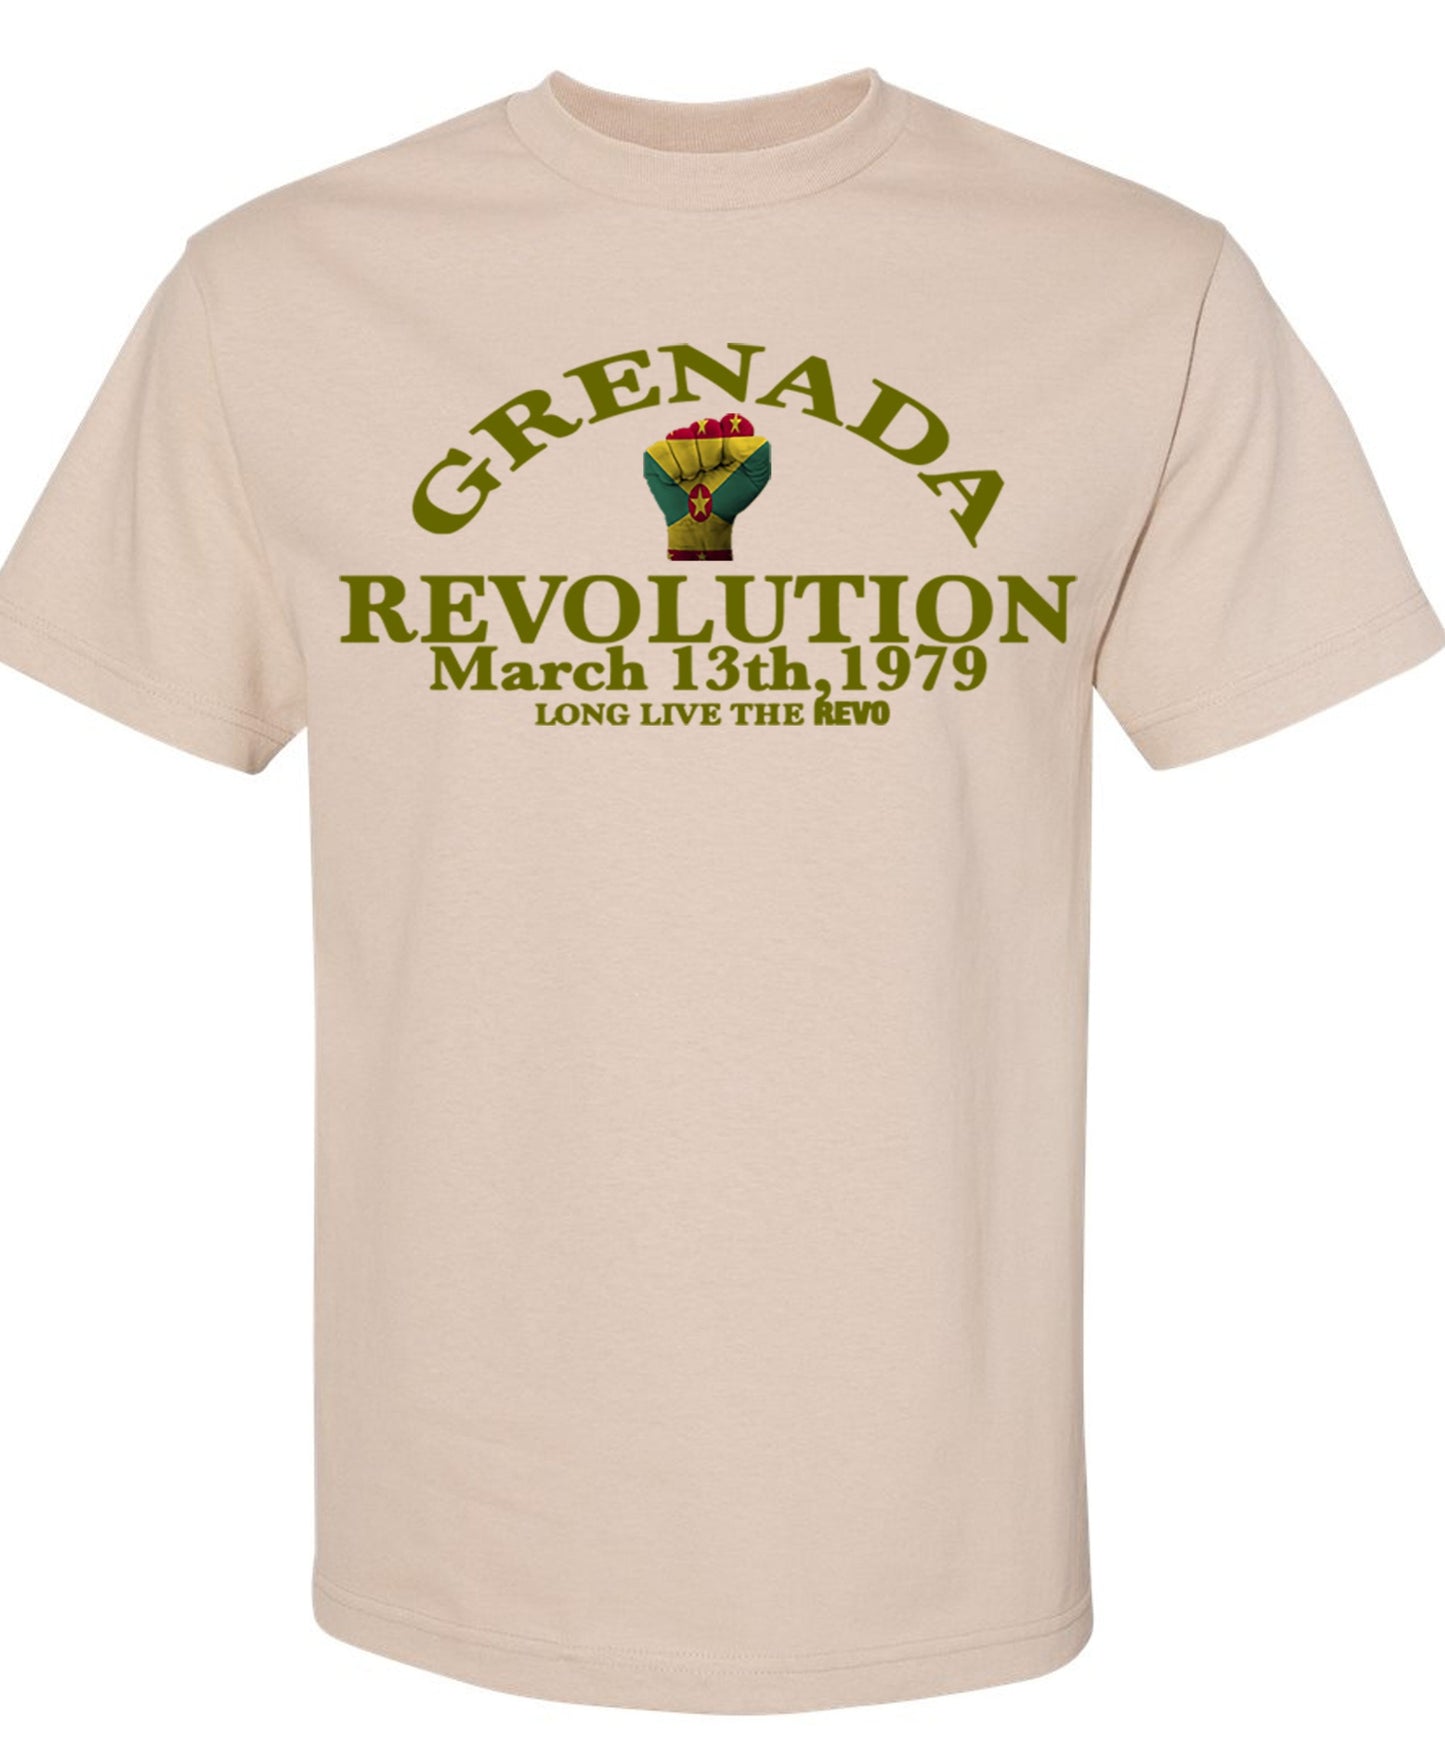 Grenada Revo T-shirt